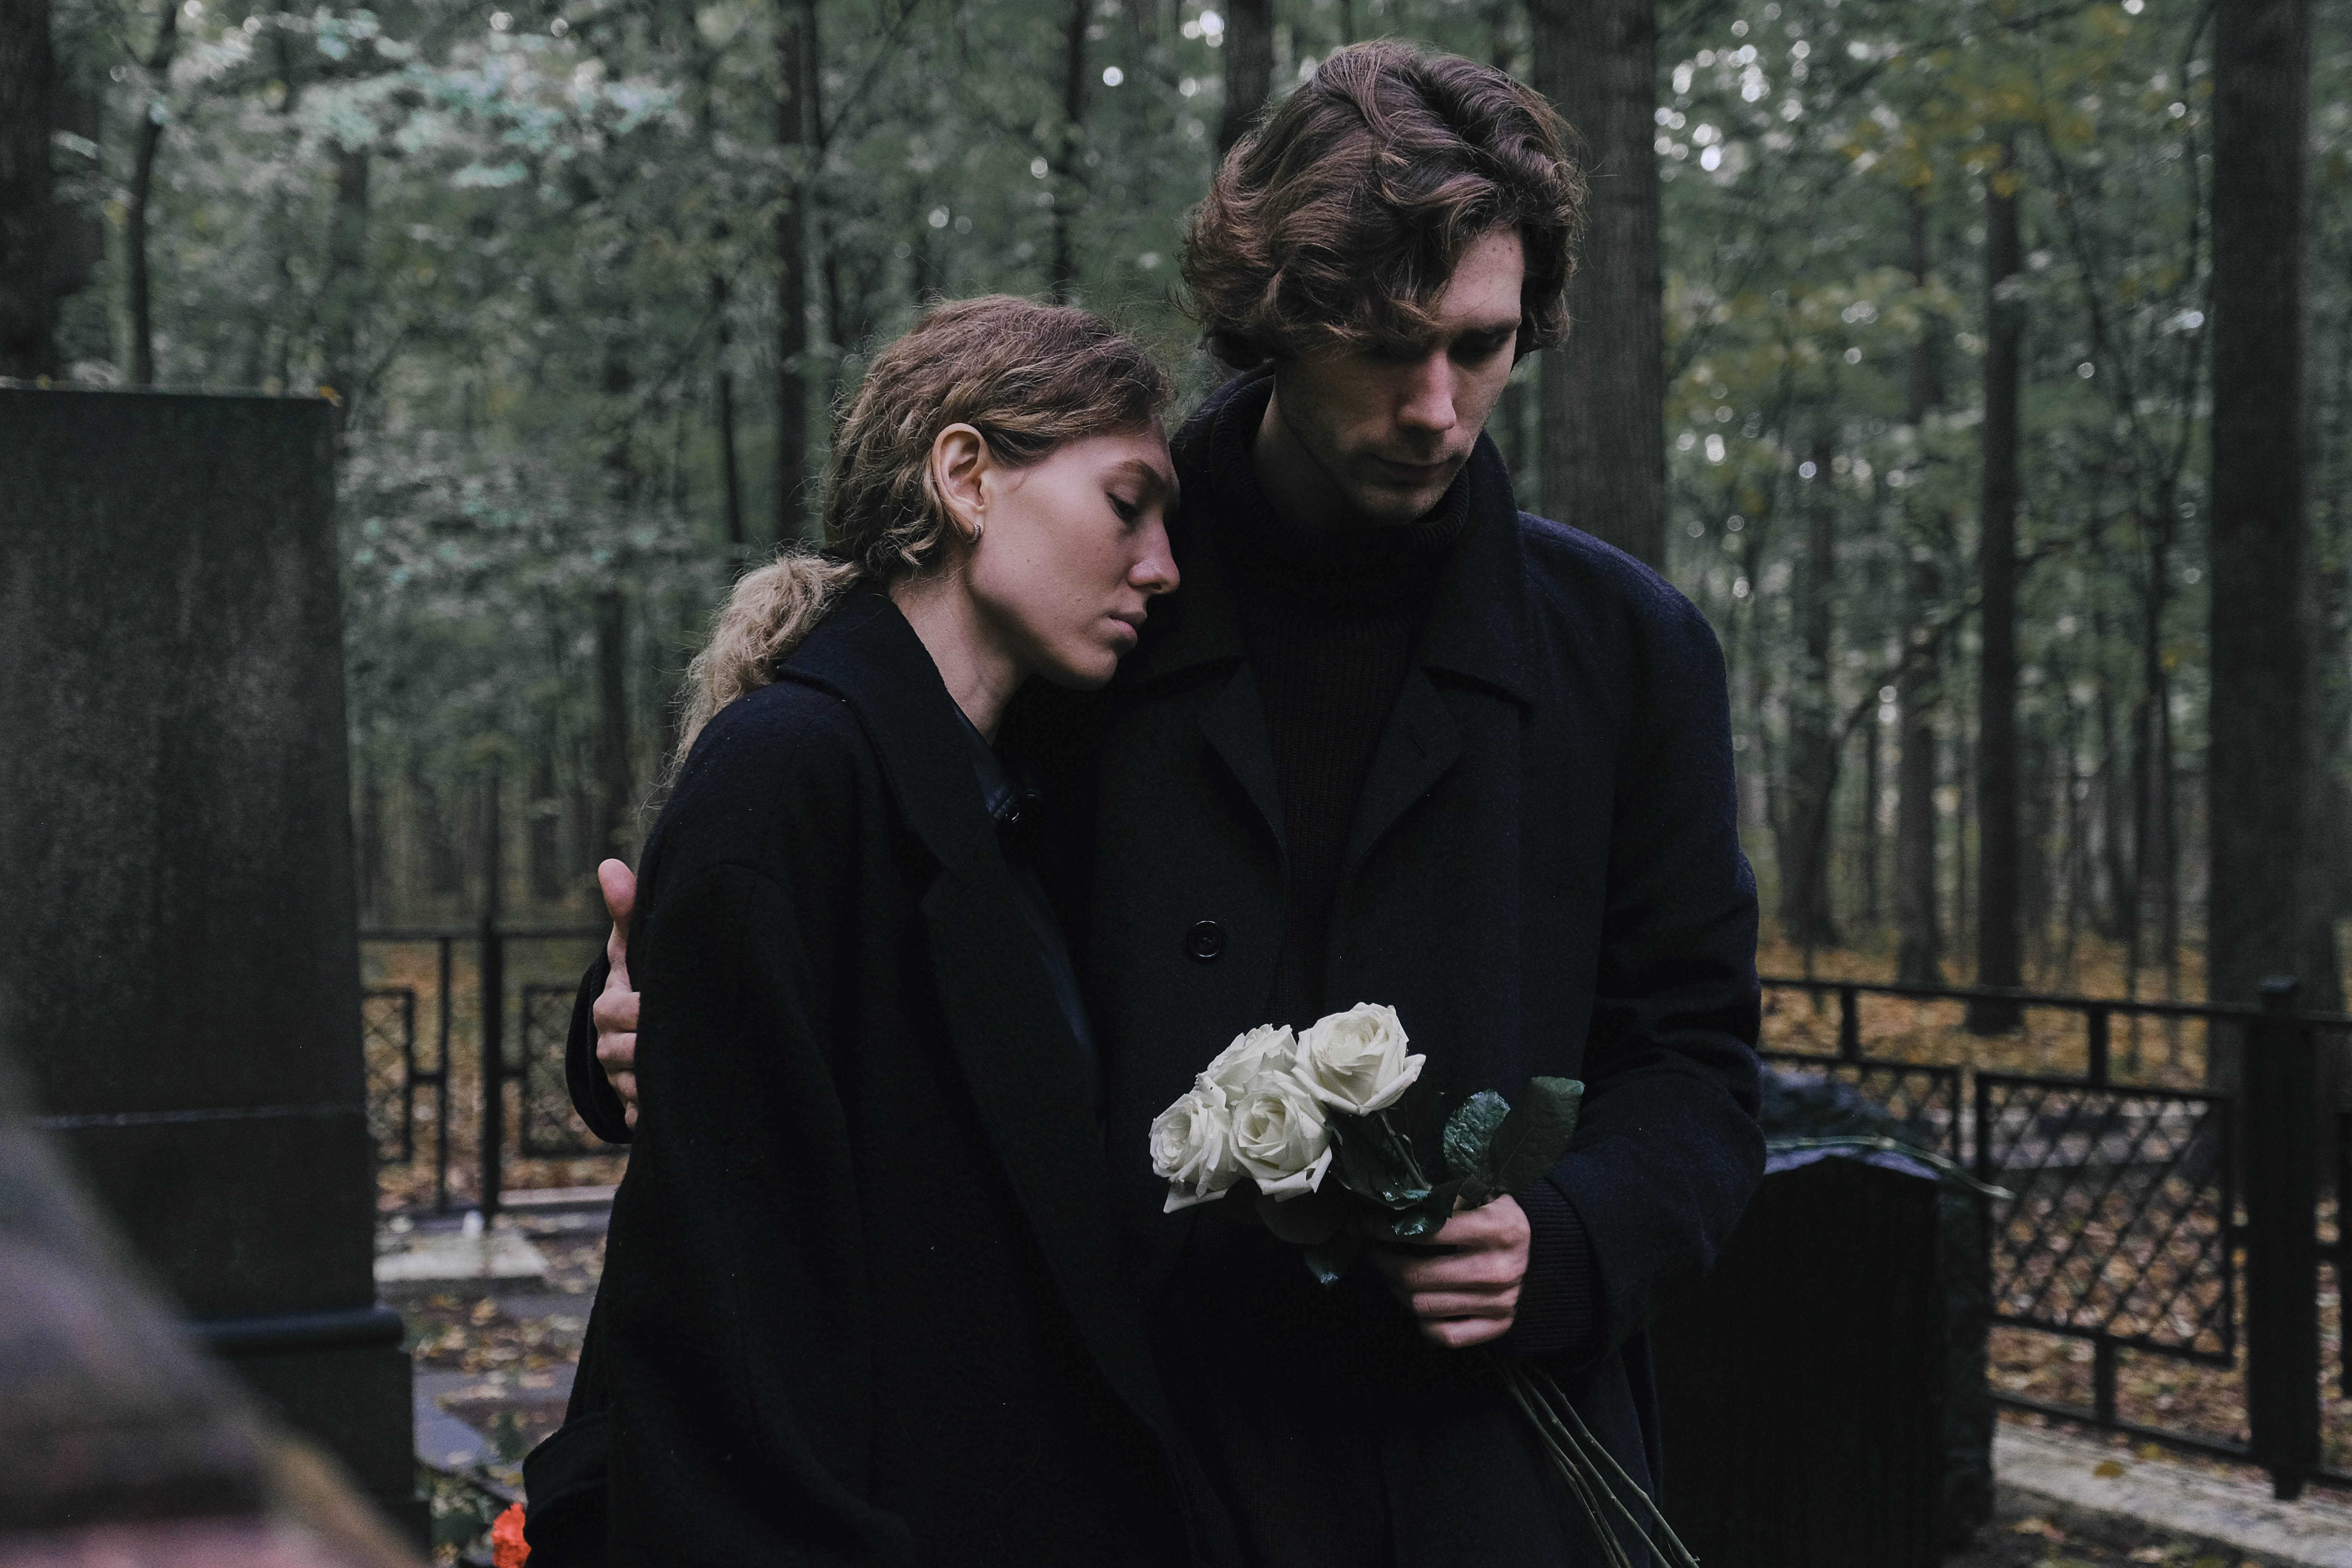 Pareja joven, hombre y mujer, de luto en el cementerio | Fuente: Getty Images